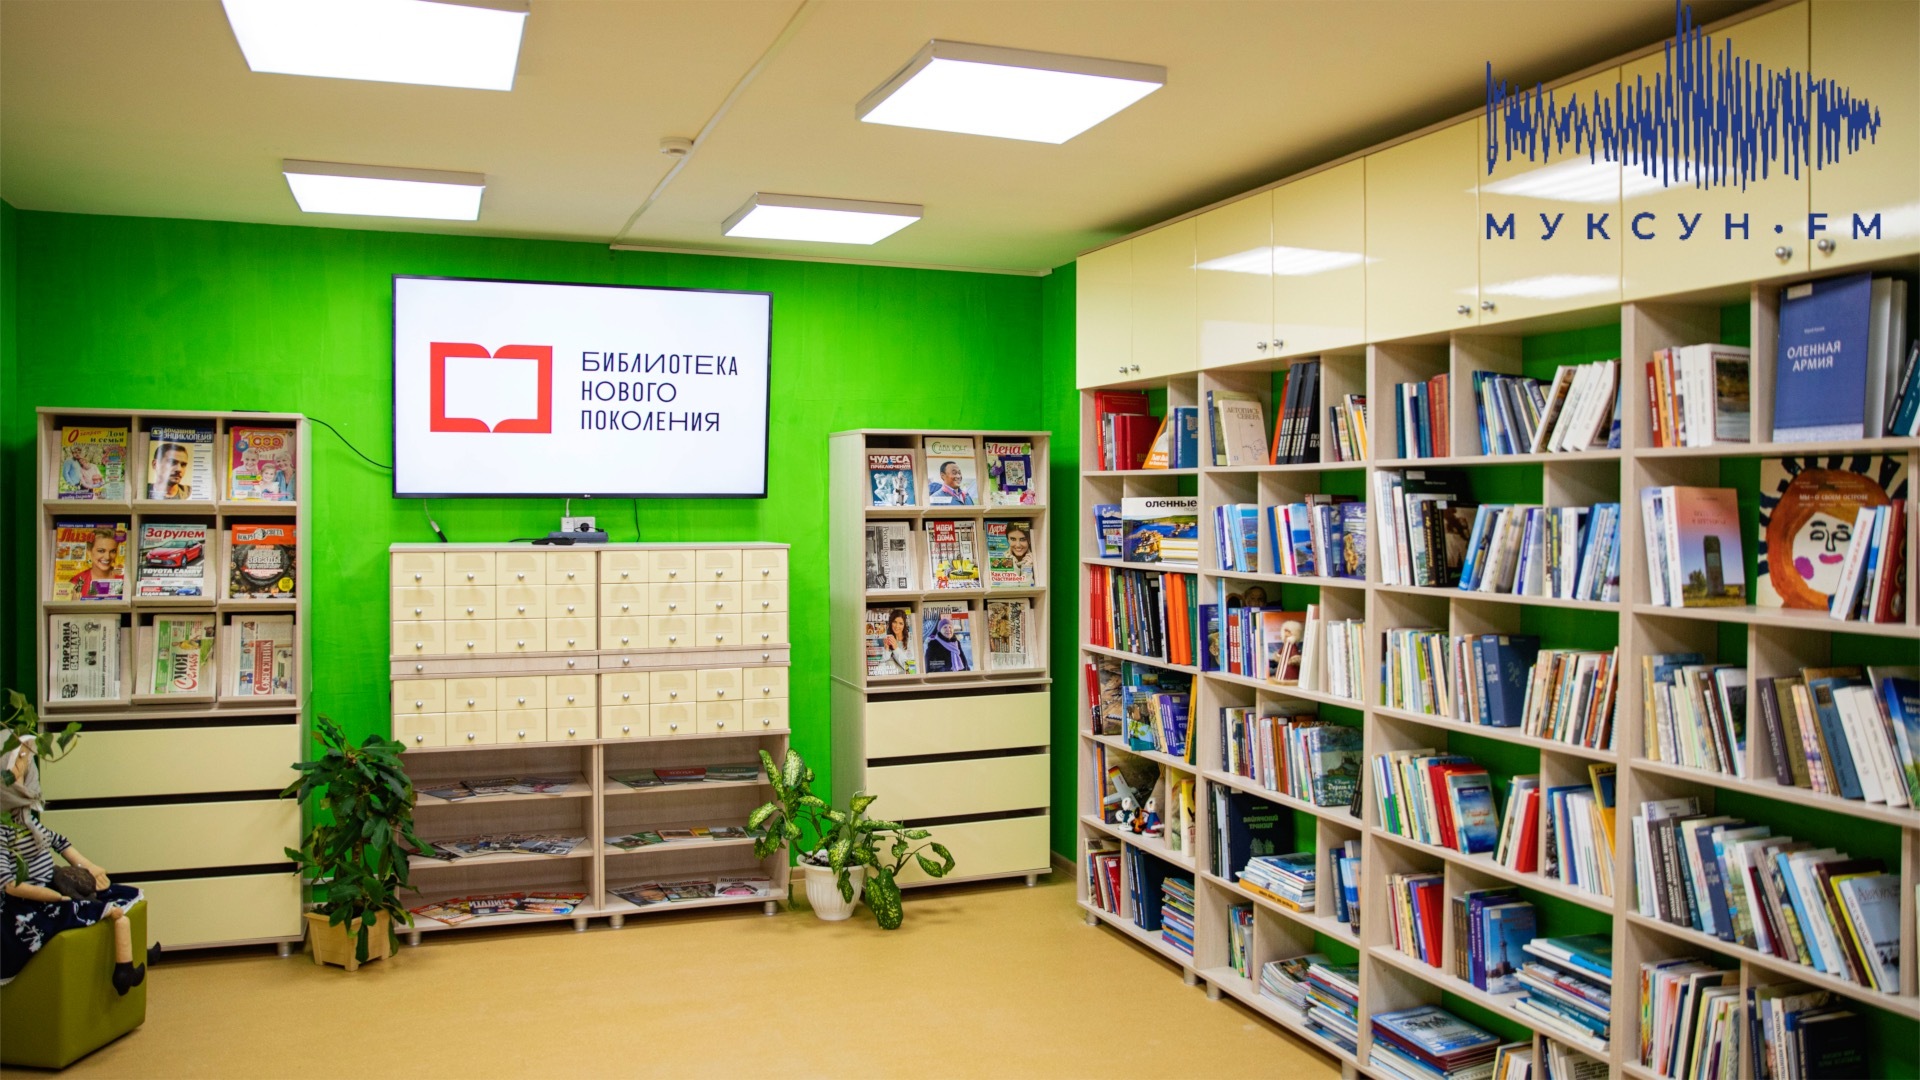 В НАО открылась первая модельная библиотека с интерактивным залом за 5 млн рублей